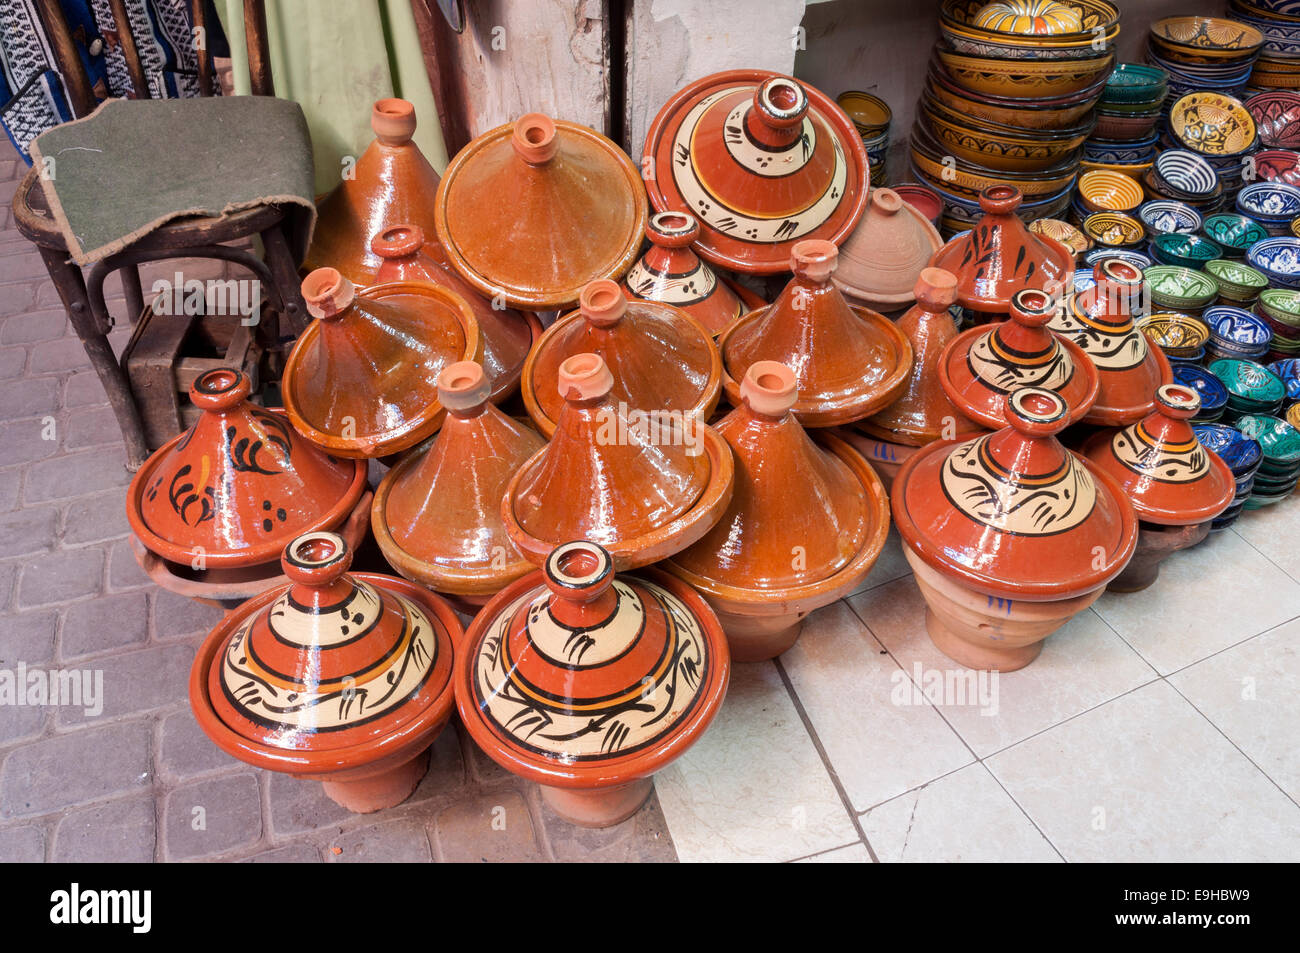 Magasin de poterie traditionnelle marocaine à Marrakech, Maroc Banque D'Images